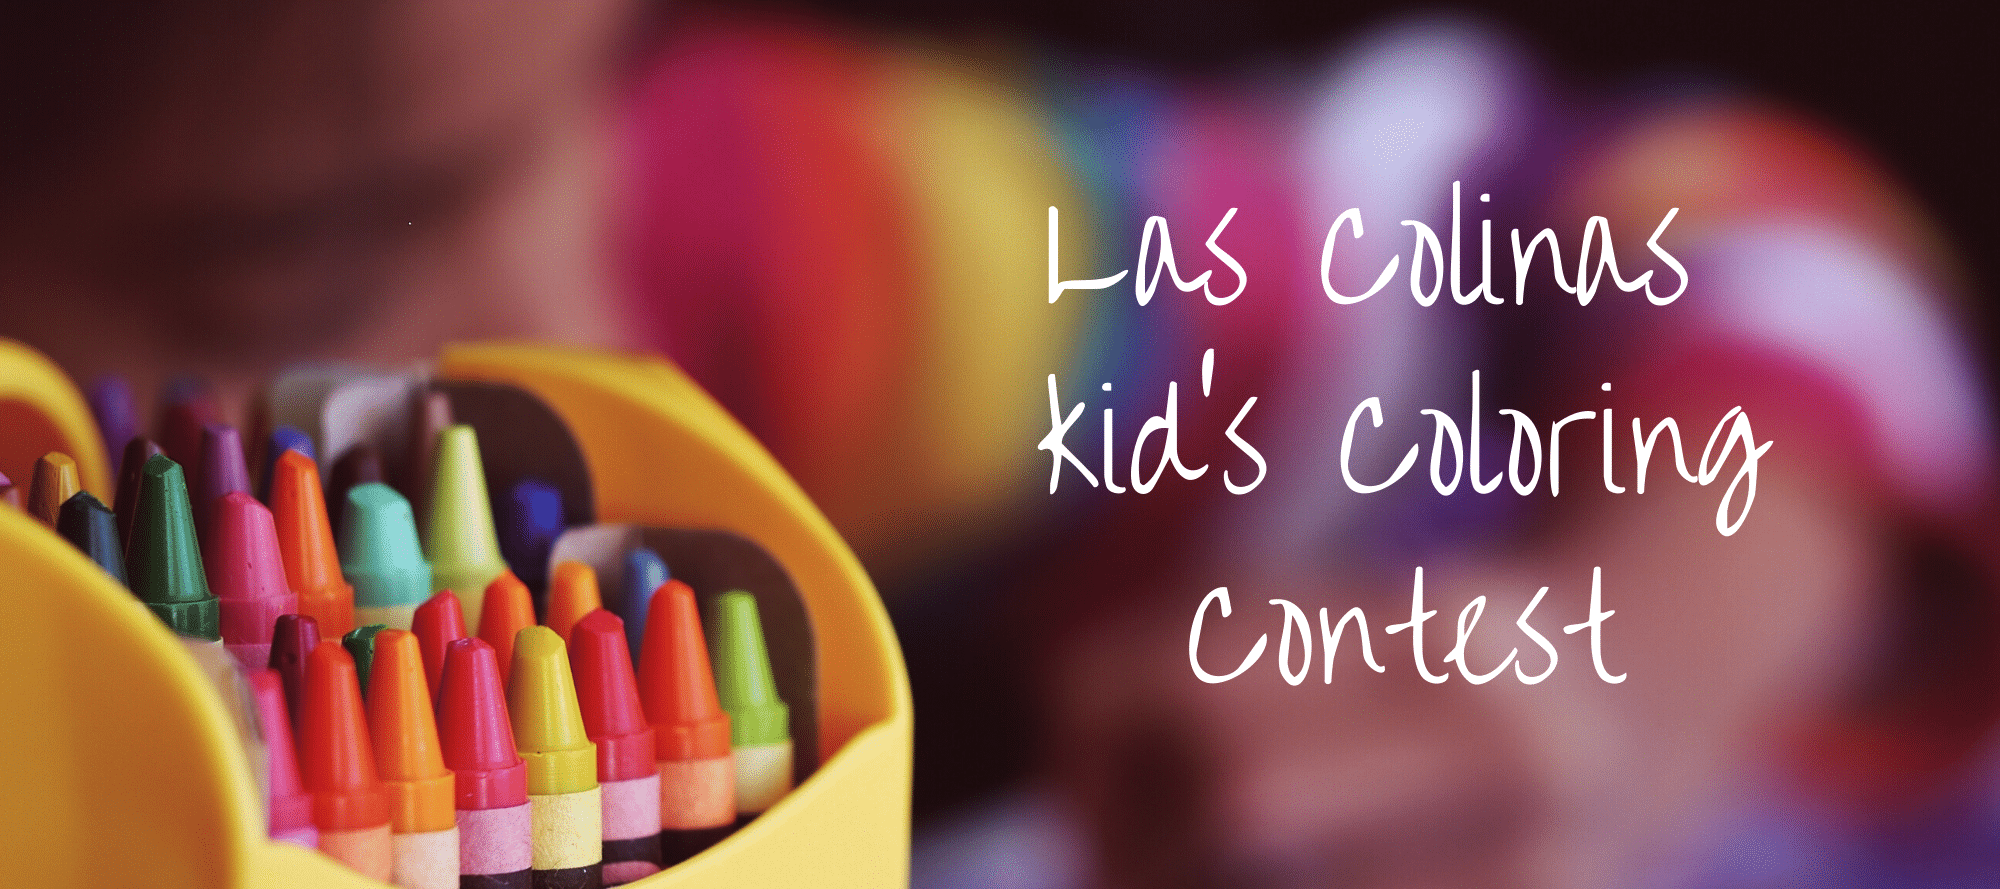 Las Colinas Coloring Contest